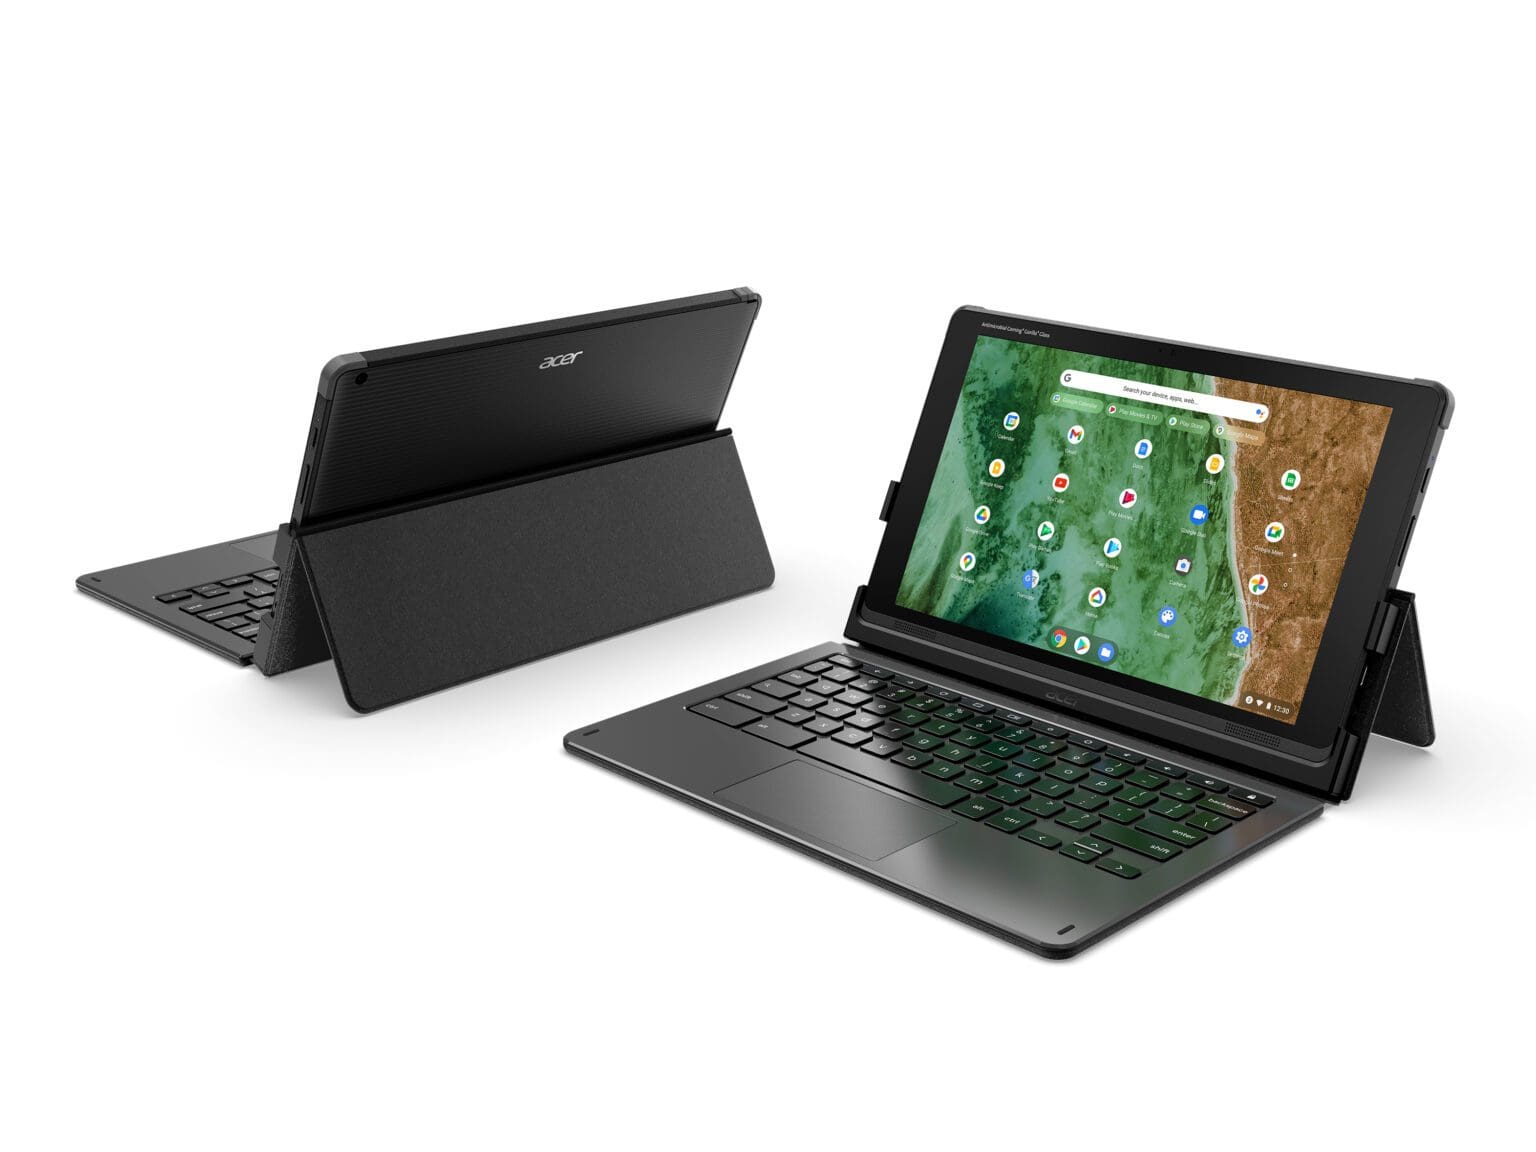 La familia Vero de Acer crece con nuevas laptops, desktop, monitores, proyectores y periféricos 10